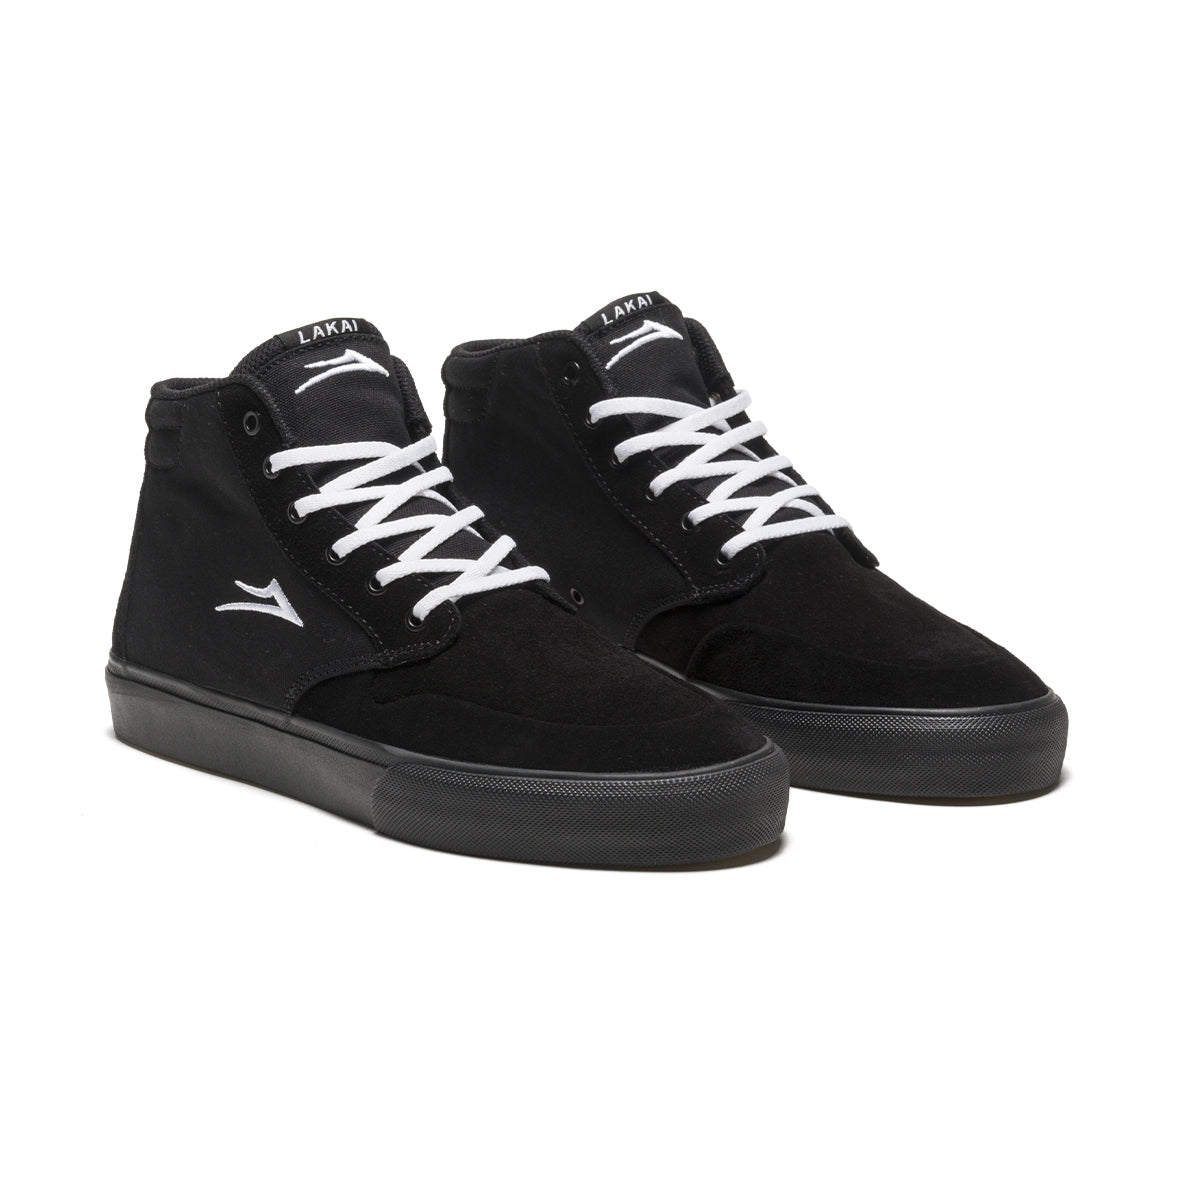 Black/Black Riley 3 High Lakai Skate Shoe